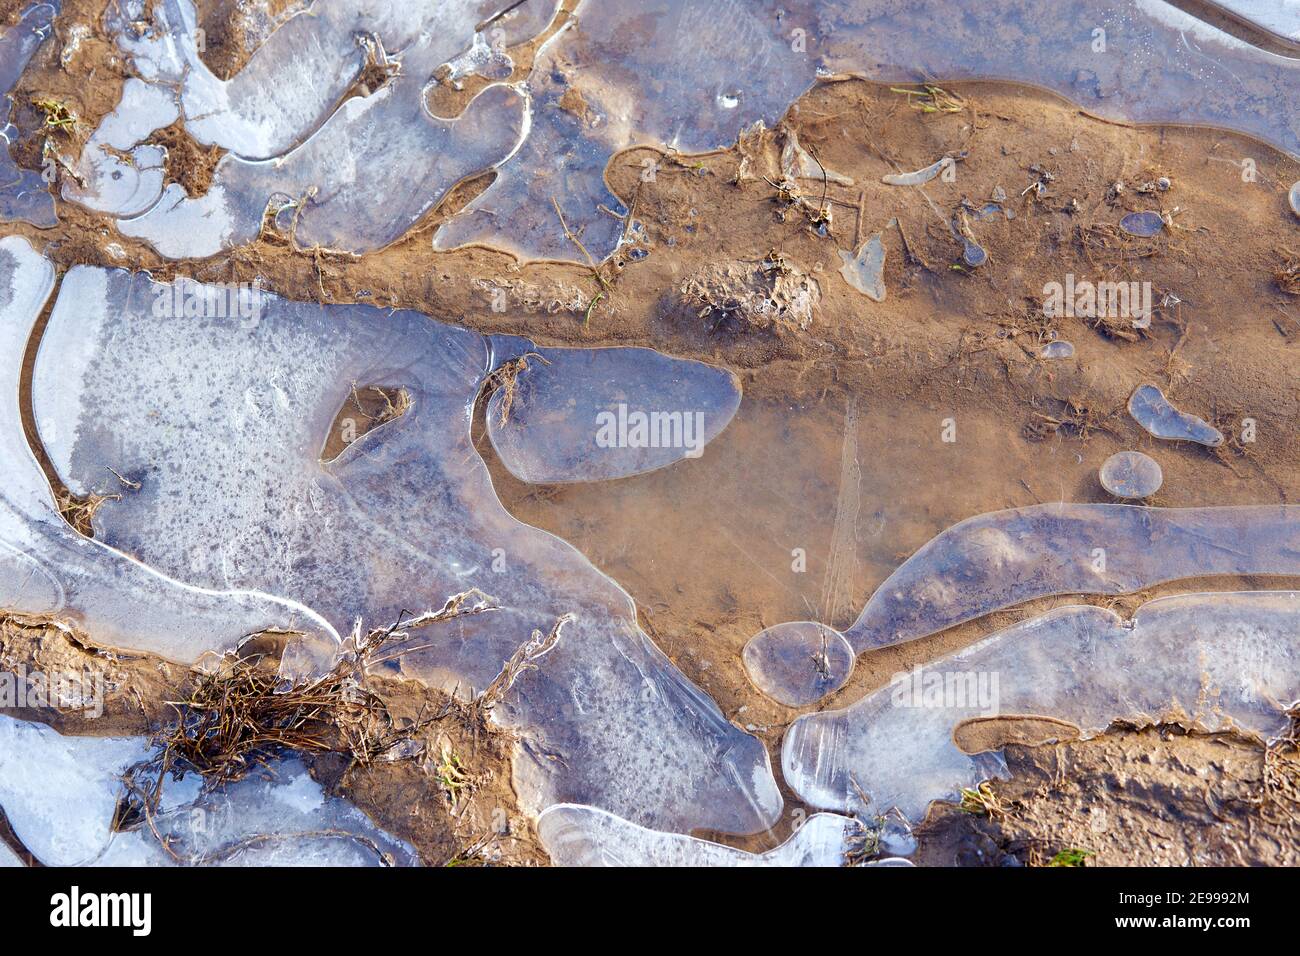 La surface de l'eau gelée dans une petite flaque, la neige et le sable se trouvent sur le dessus.gros plan.Air gelé dans la glace crée des bulles blanches. Le premier automne se froste. Banque D'Images